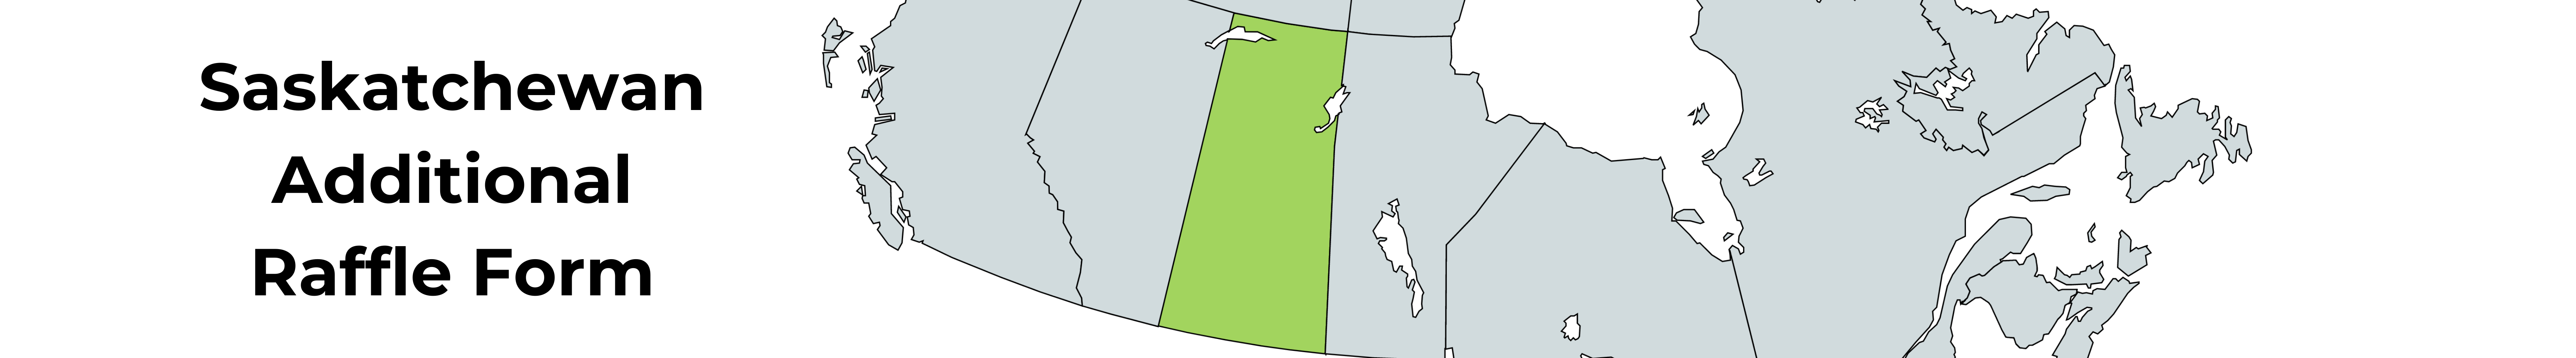 Saskatchewan Additional Raffle Form